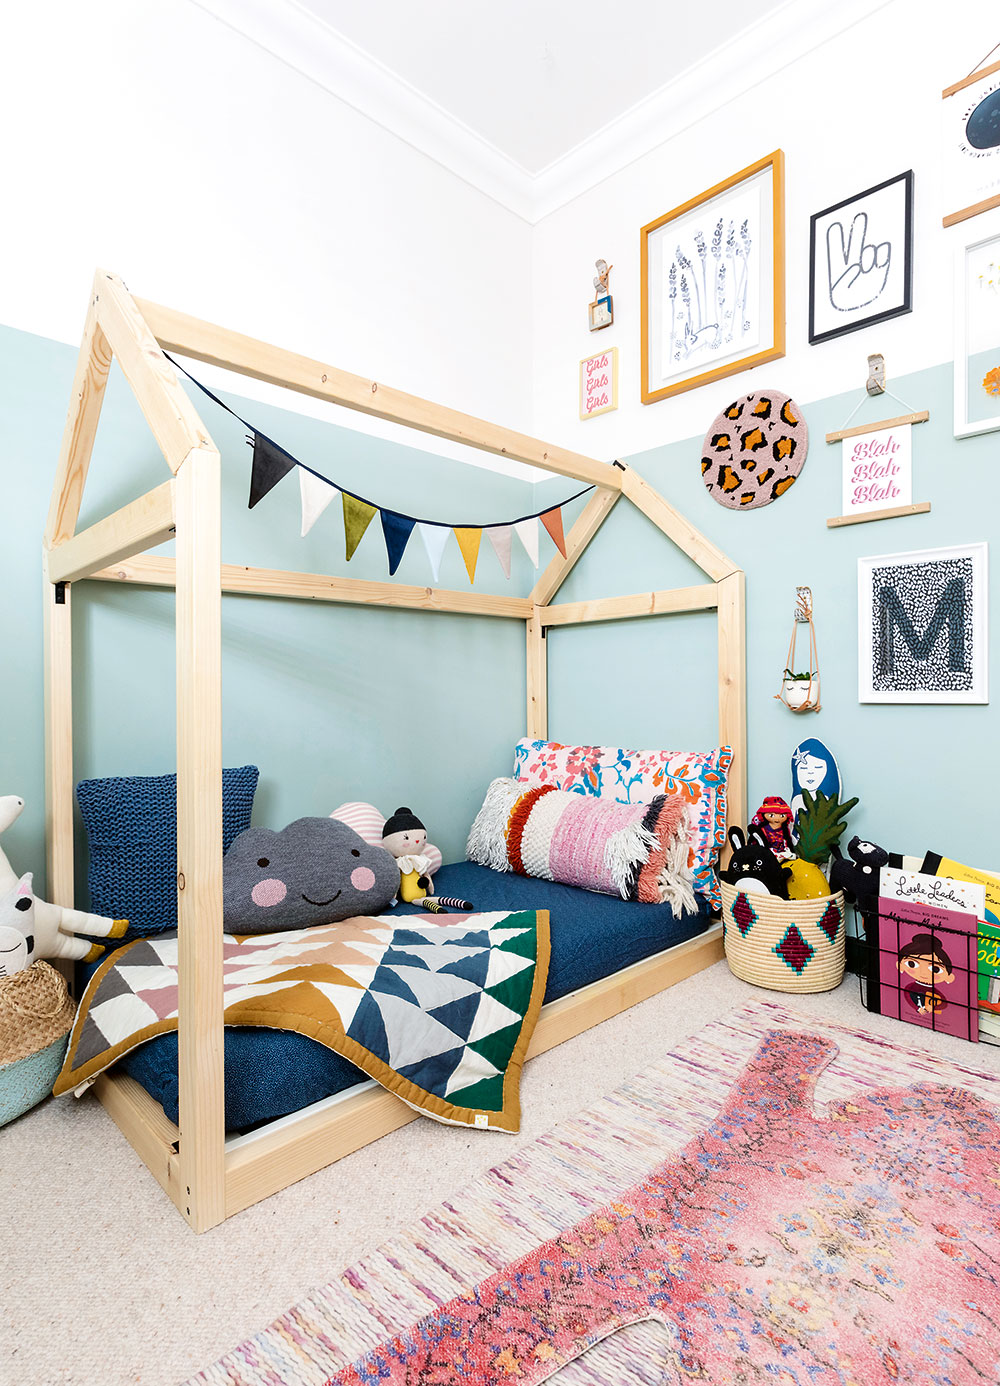 Dvoubarevné stěny, sbírka obrazů a postel ve tvaru domu dělají z pokoje malé Maddi perfektní místo pro dětské hry. FOTO FIONA MURRAY